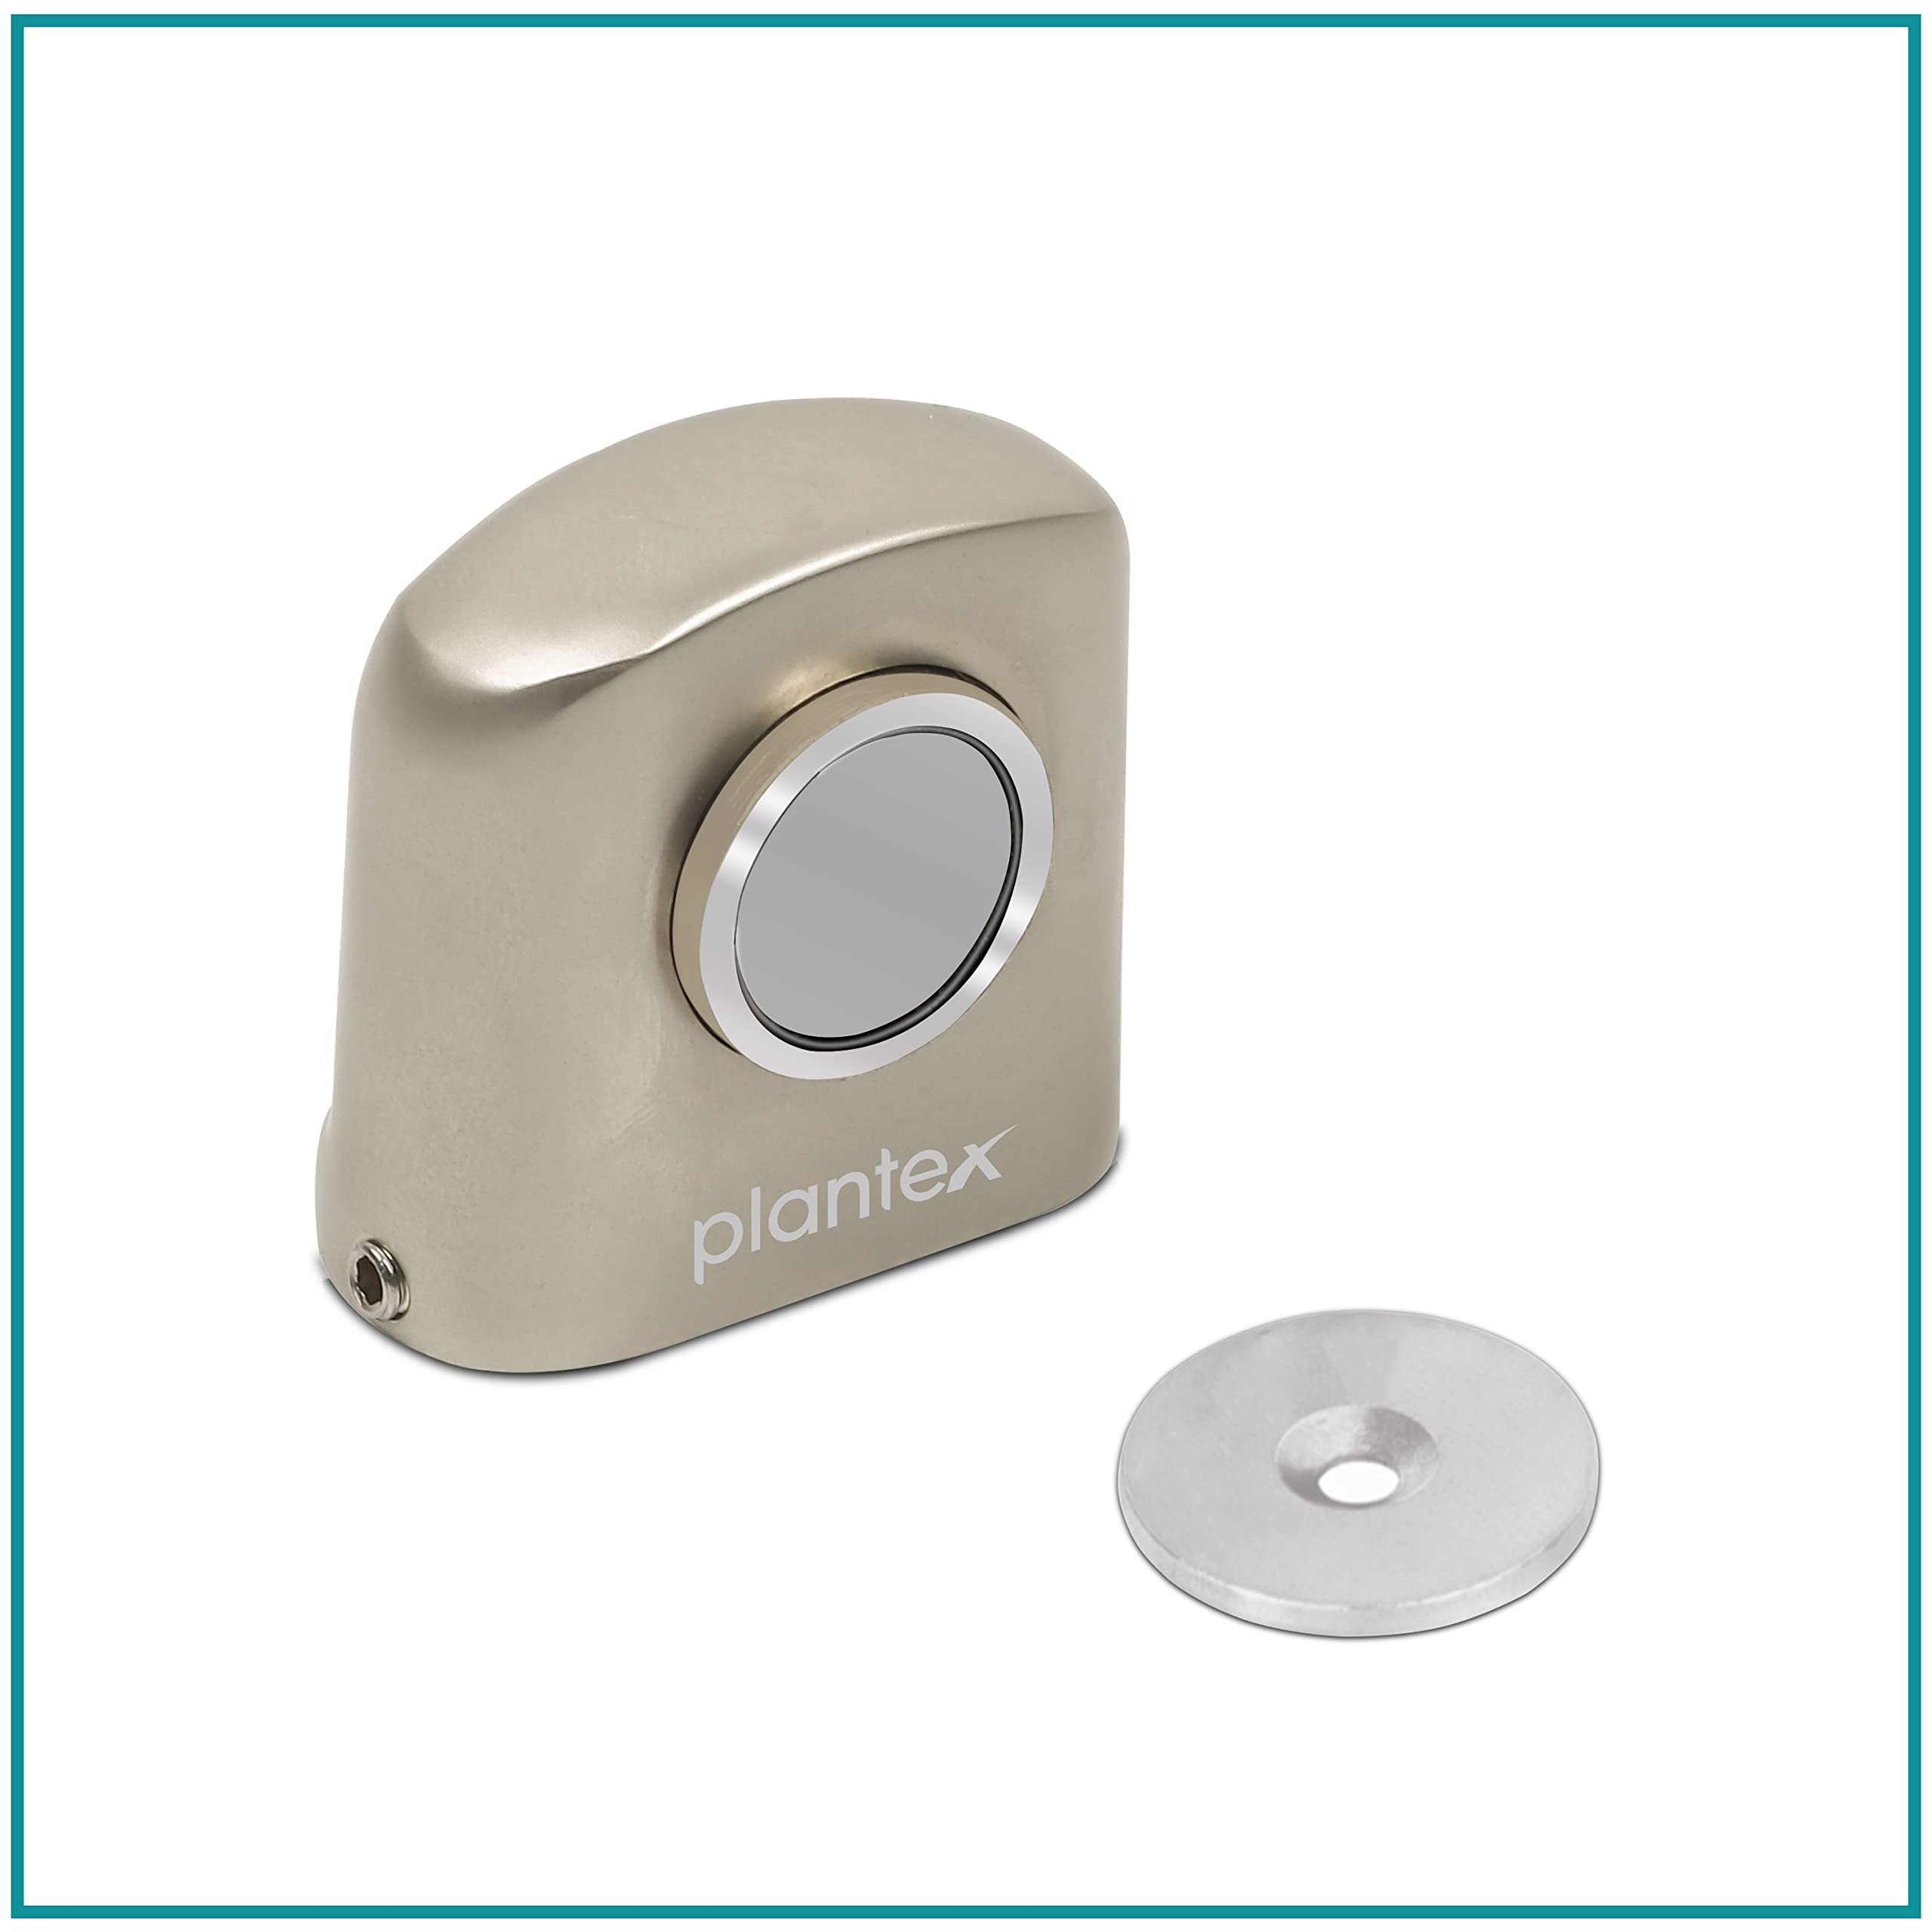 Plantex Heavy Duty Door Magnet Stopper/Door Catch Holder for Home/Office/Hotel, Floor Mounted Soft-Catcher to Hold Wooden/Glass/PVC Door - Pack of 20 (193 - Satin Matt)